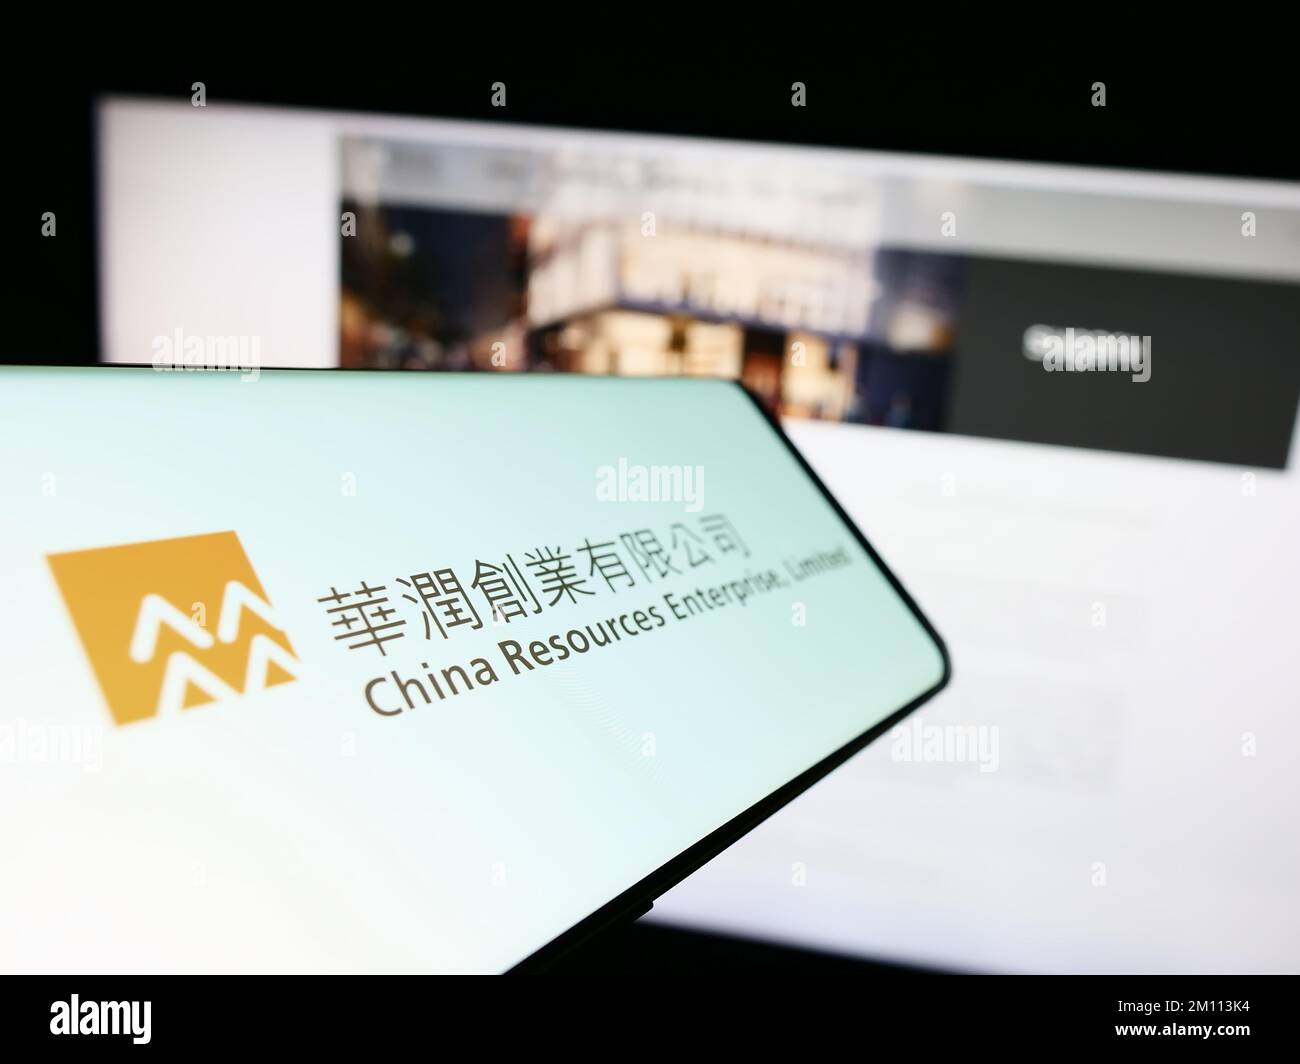 Telefono cellulare con il logo della società China Resources Enterprise Limited sullo schermo davanti al sito Web. Messa a fuoco al centro a sinistra del display del telefono. Foto Stock